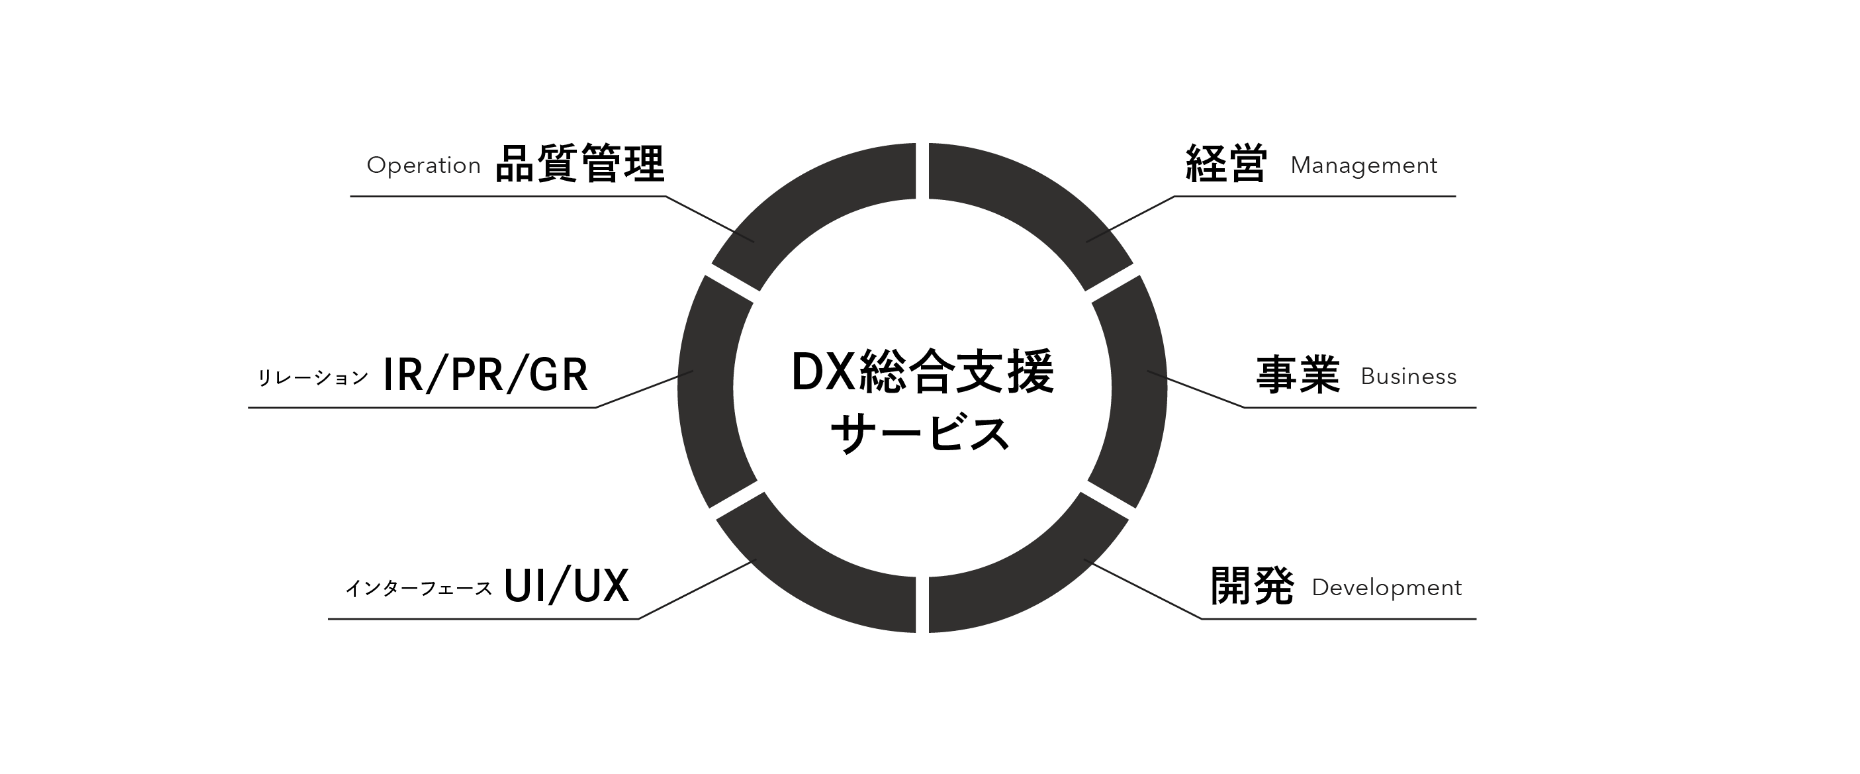 DX総合支援サービス